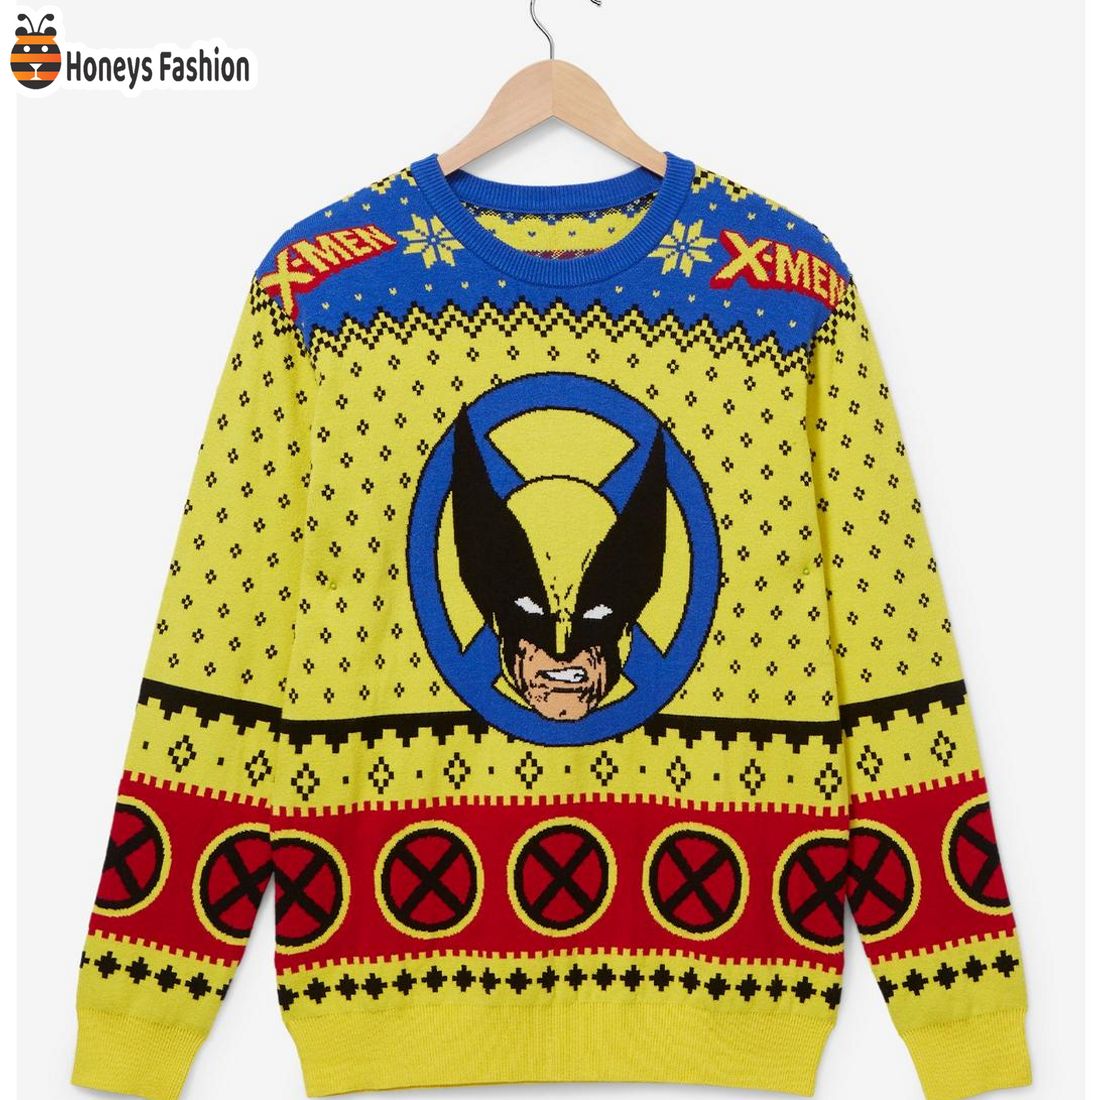 BEST X Men Wolverine Holiday Sweater